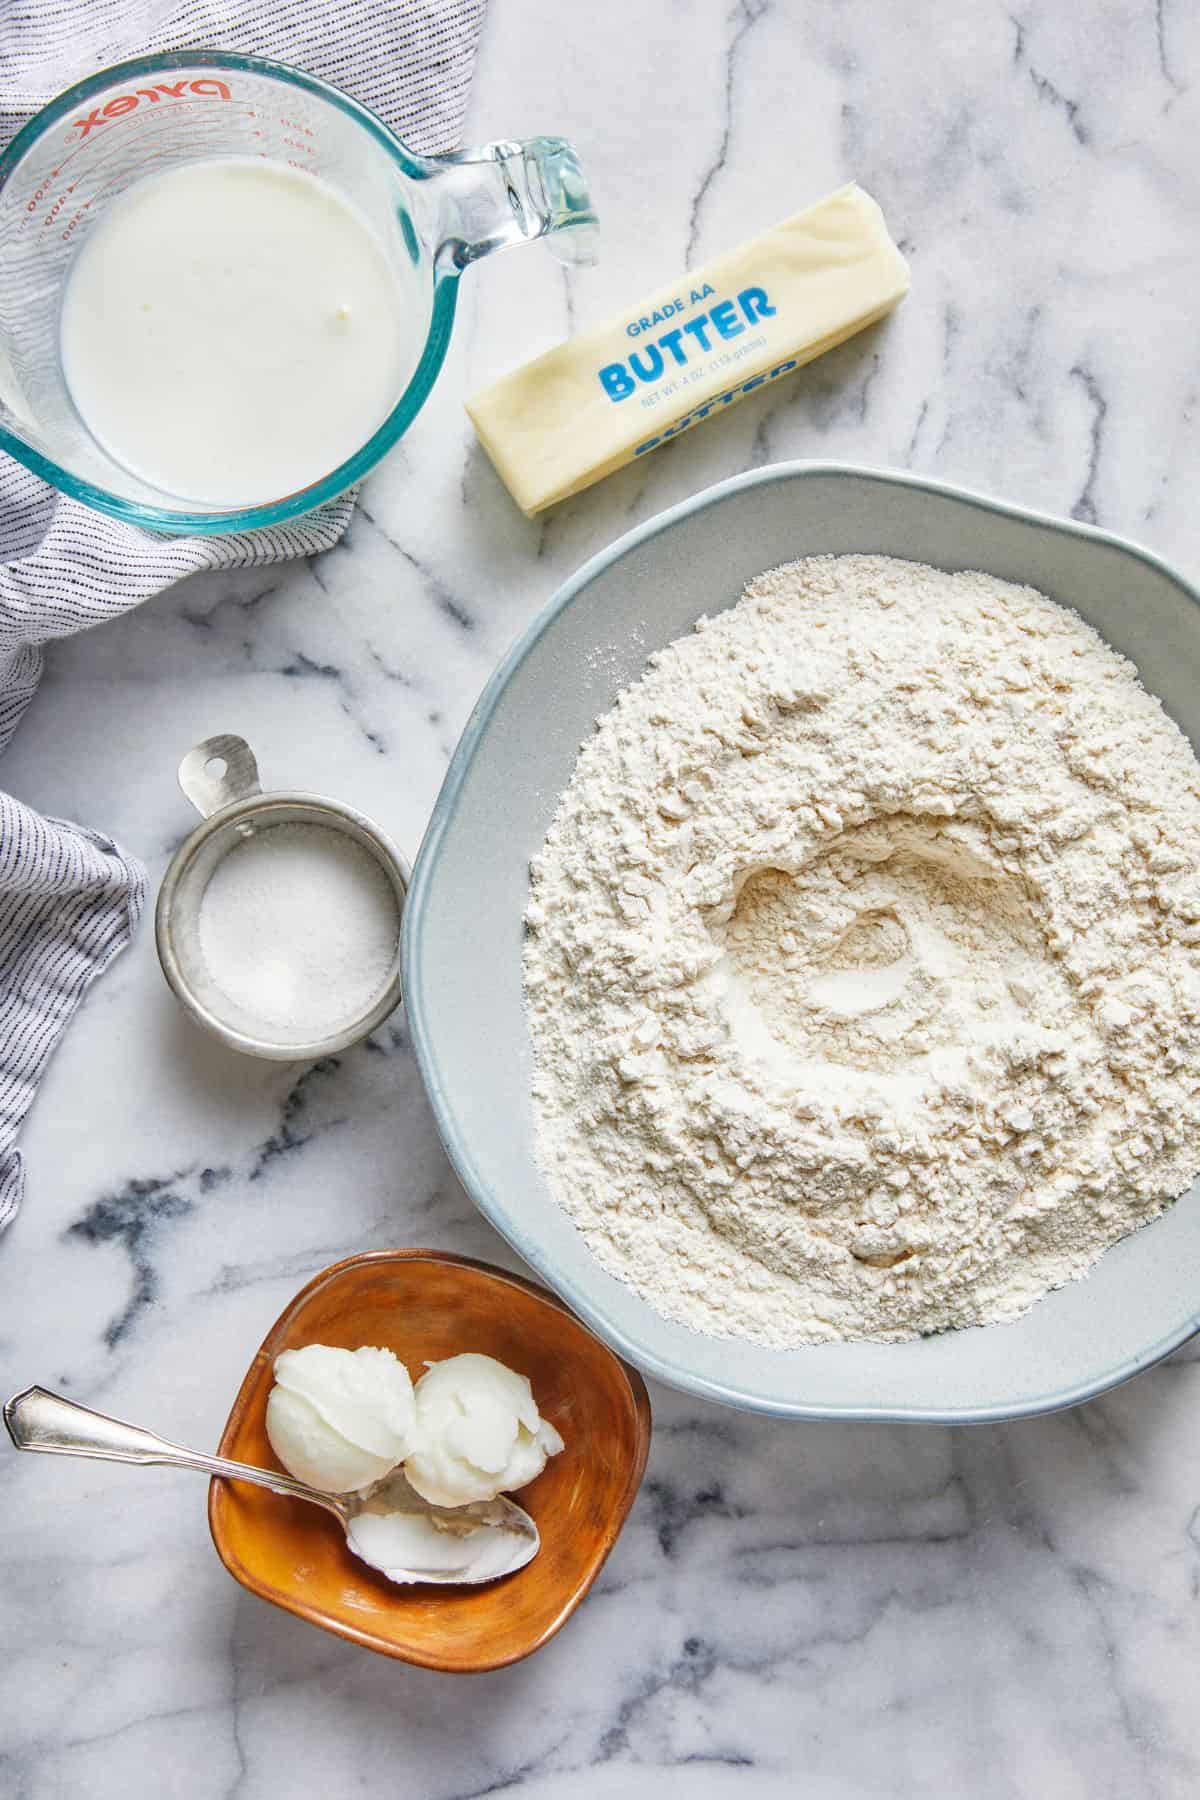 Ingredients to make buttermilk biscuits